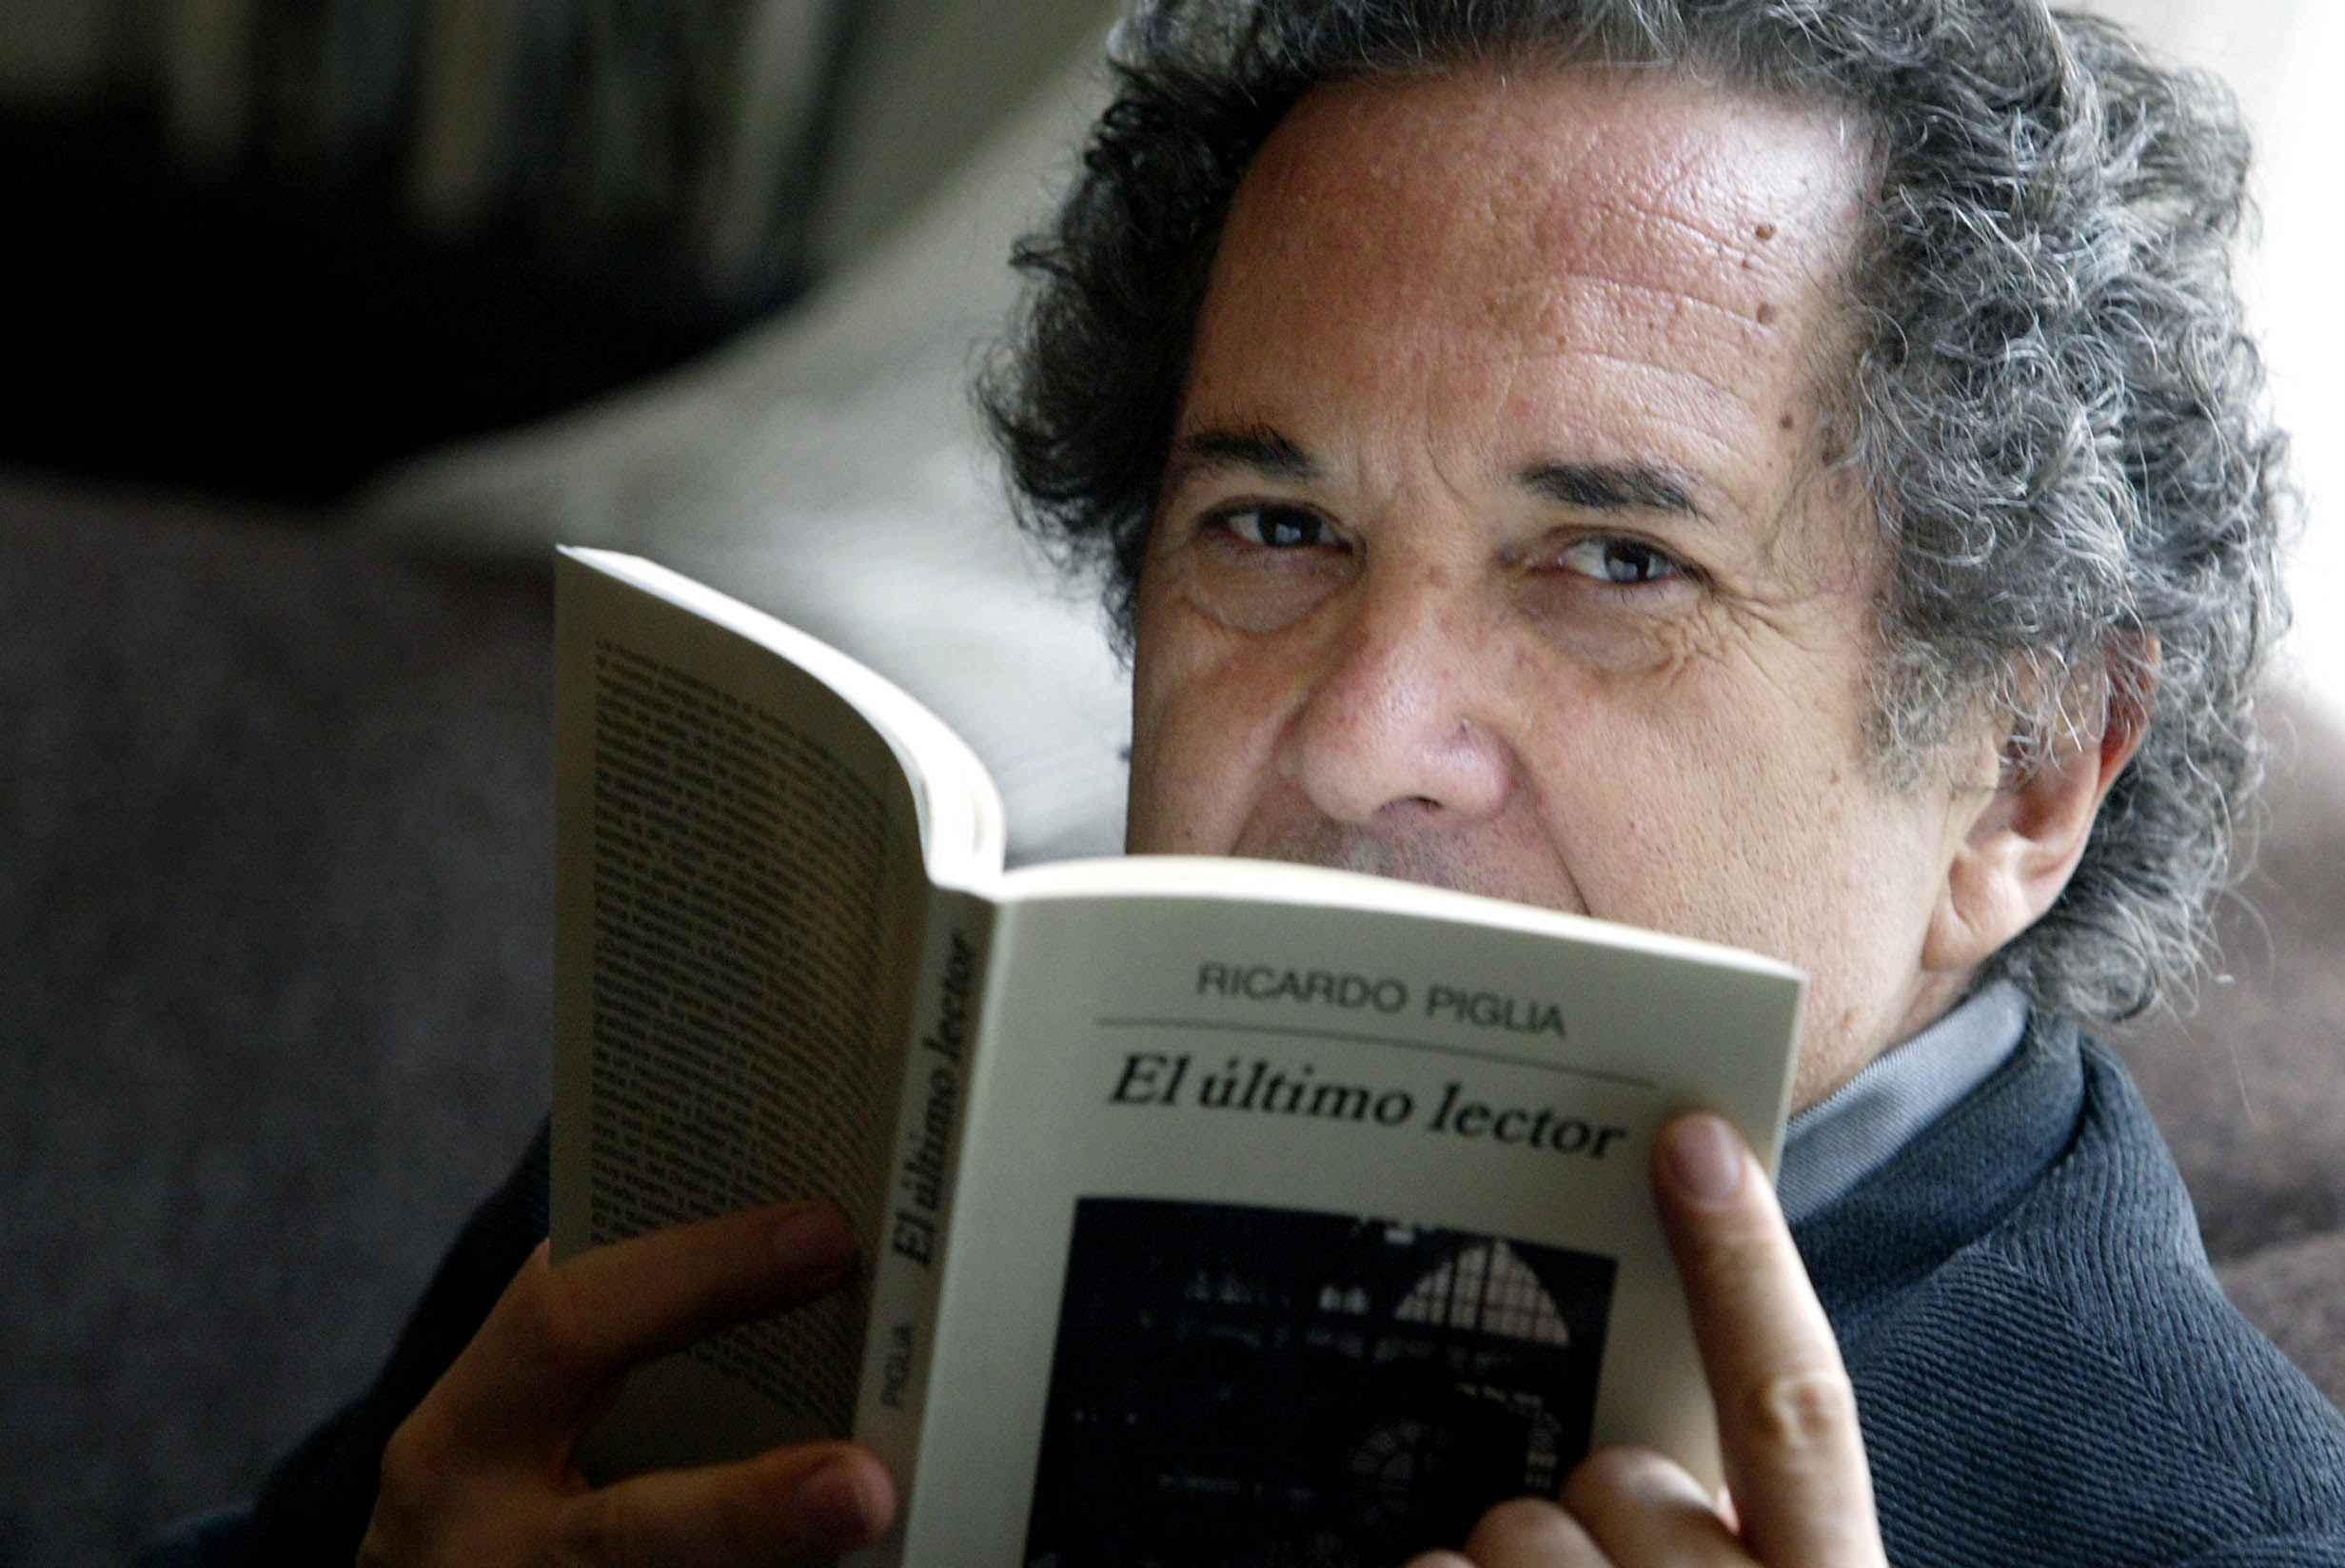  Muere el escritor argentino Ricardo Piglia a los 75 años